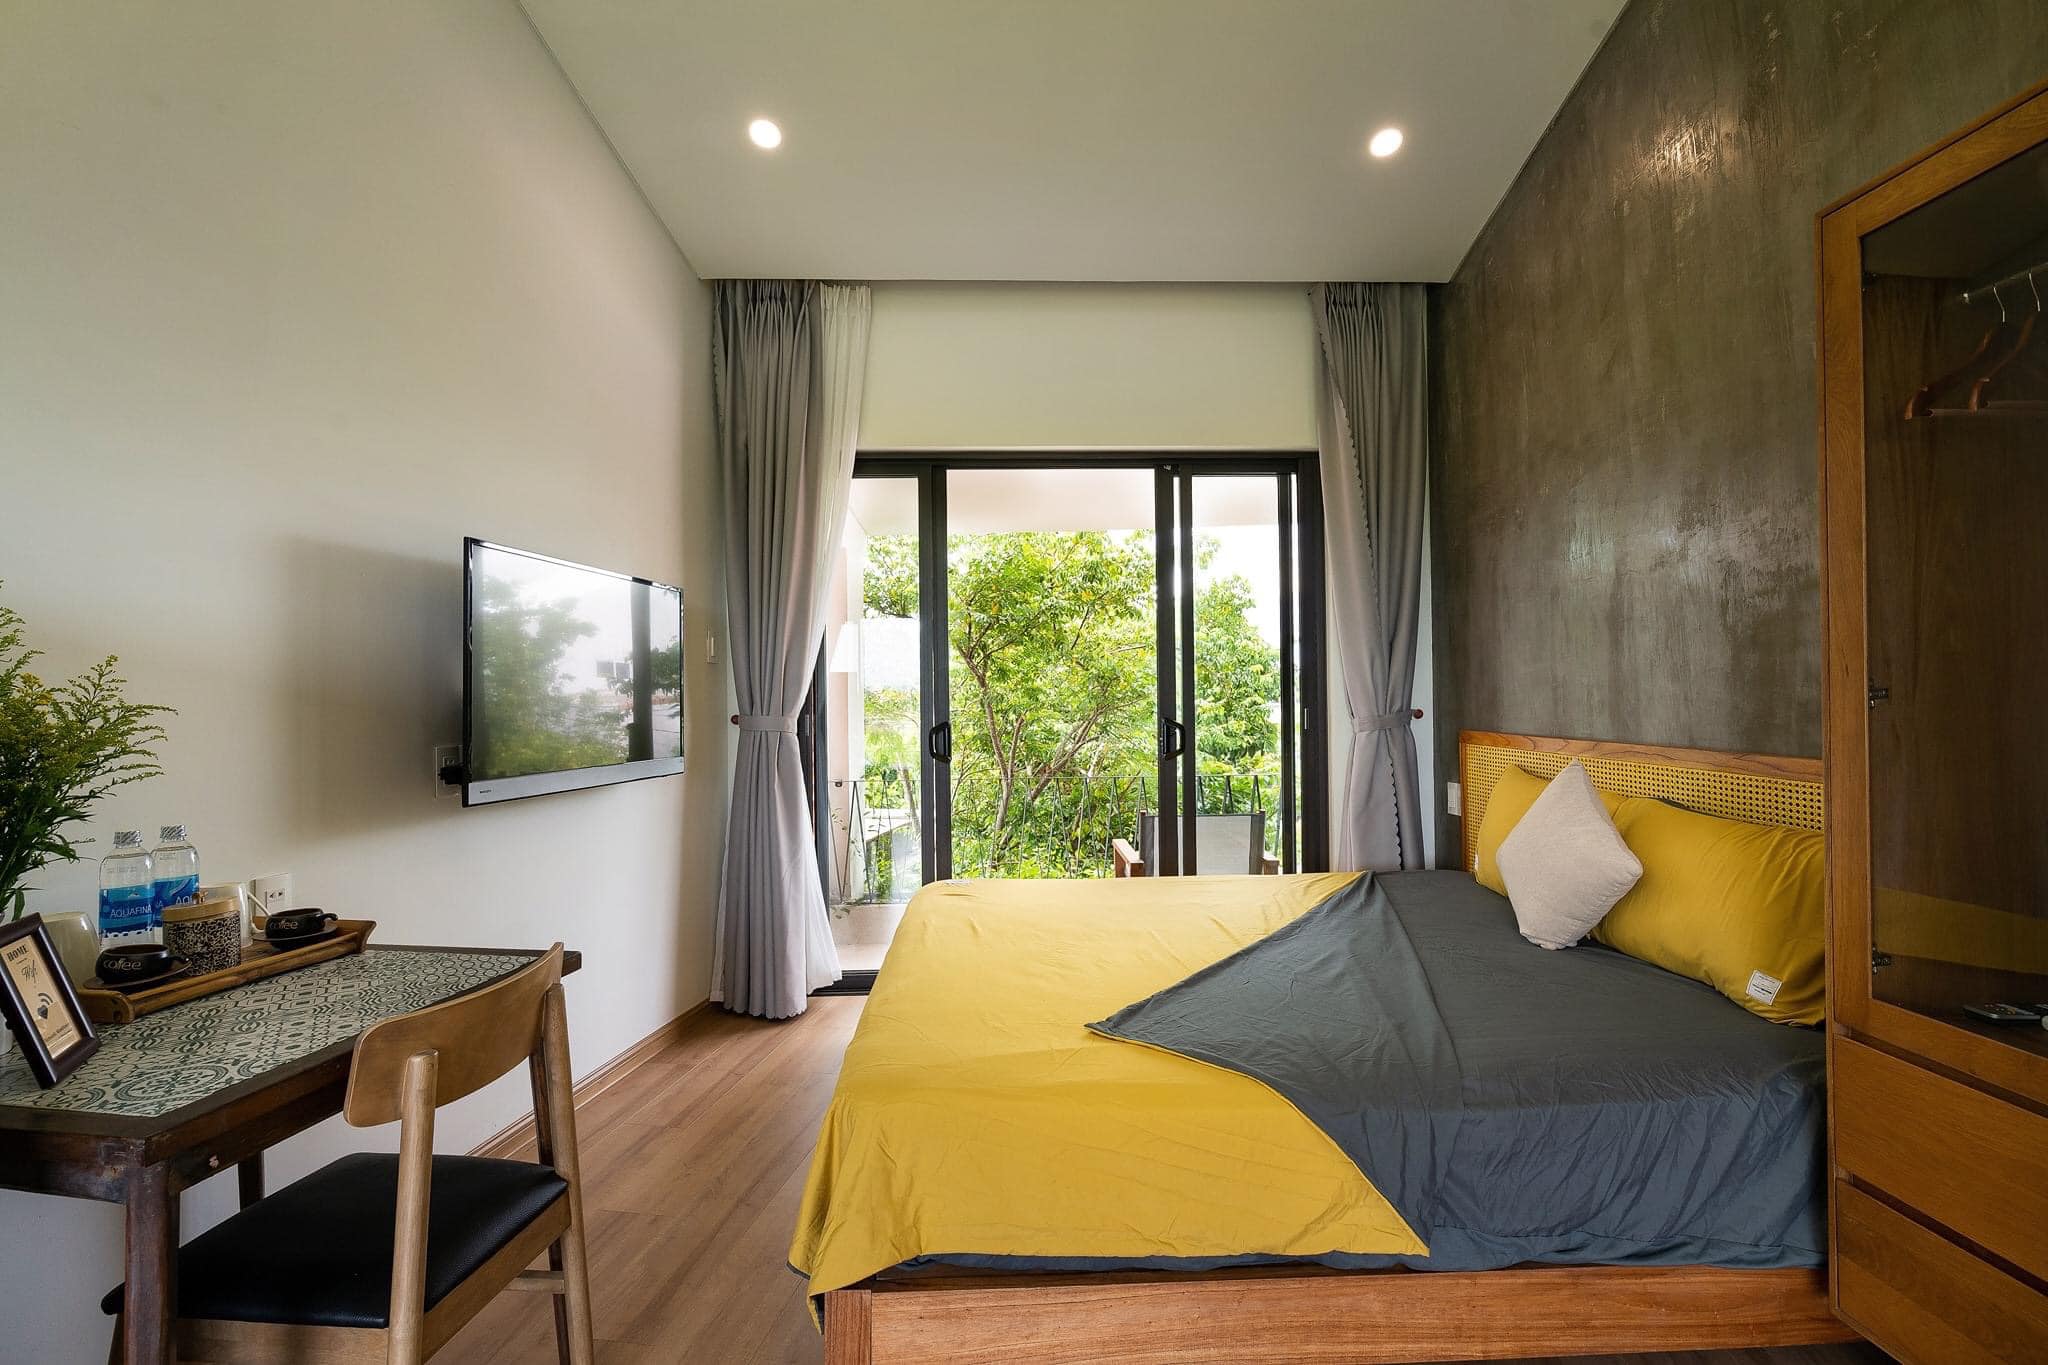 Phòng ngủ với sự kết hợp hài hòa giữa tường sơn màu nhẹ nhàng và bức tường đầu giường được để nguyên không sơn cực kỳ ấn tượng